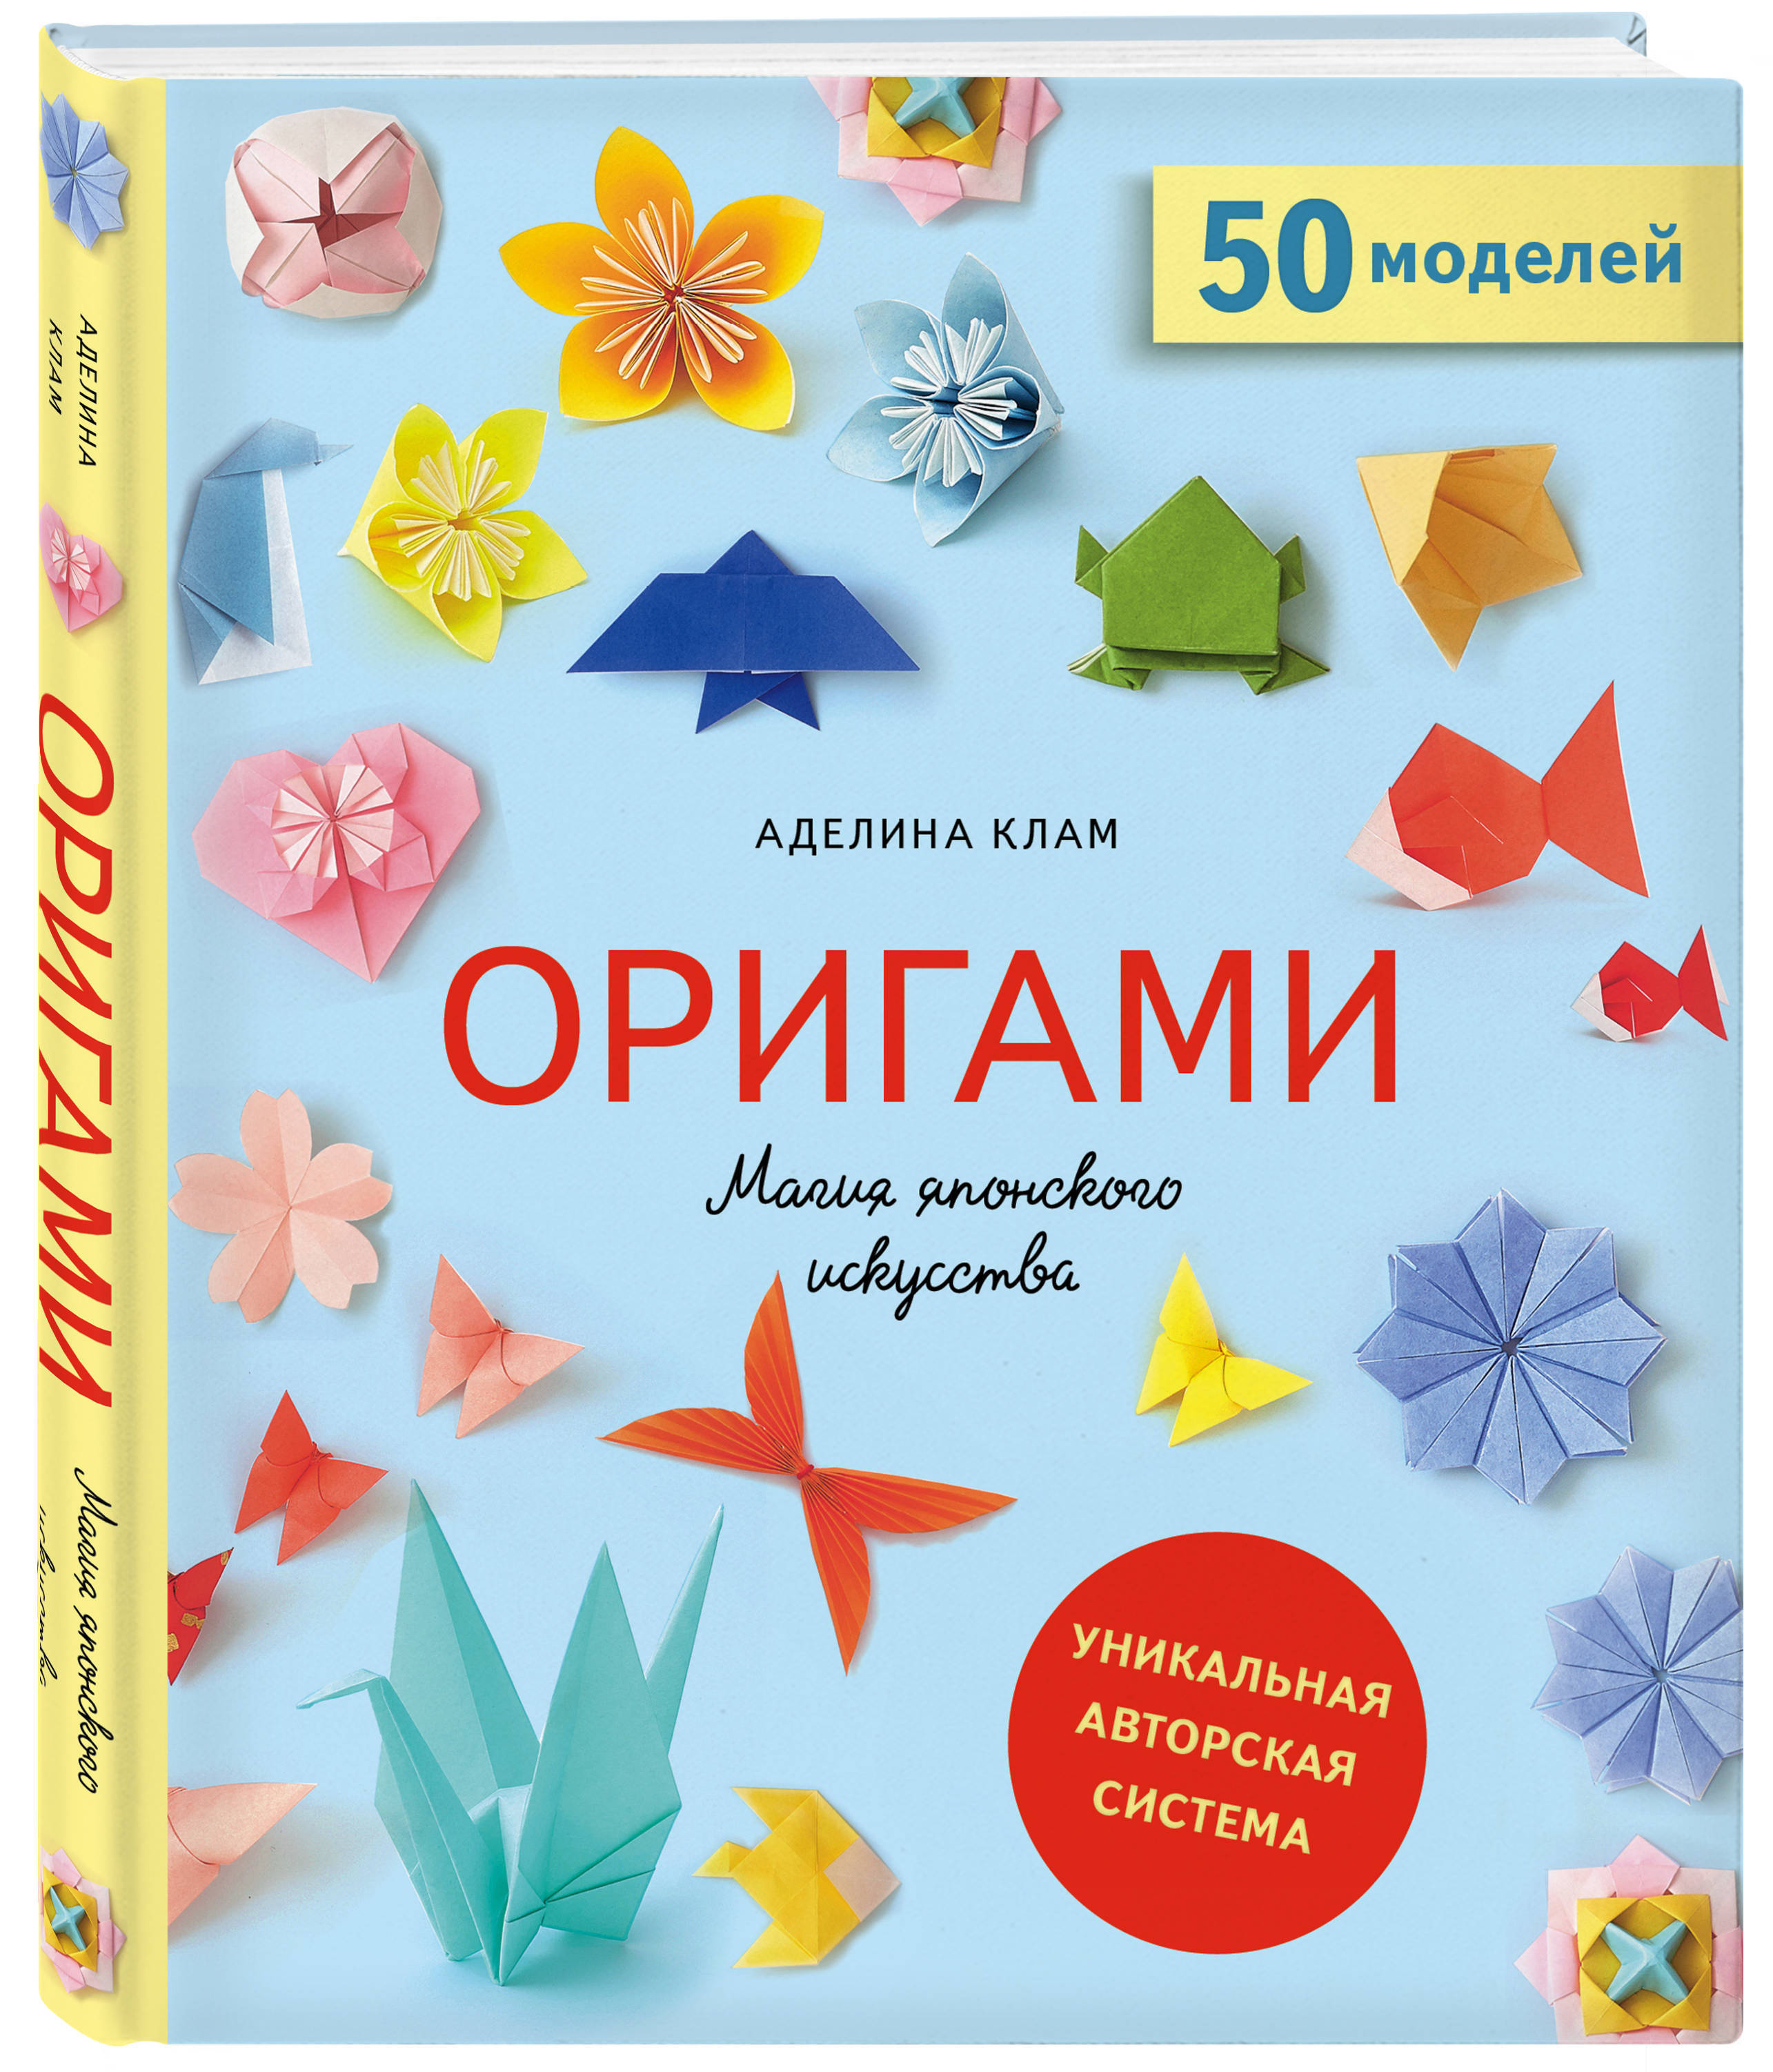 Гадалка оригами | Гадания на бумаге | DIY